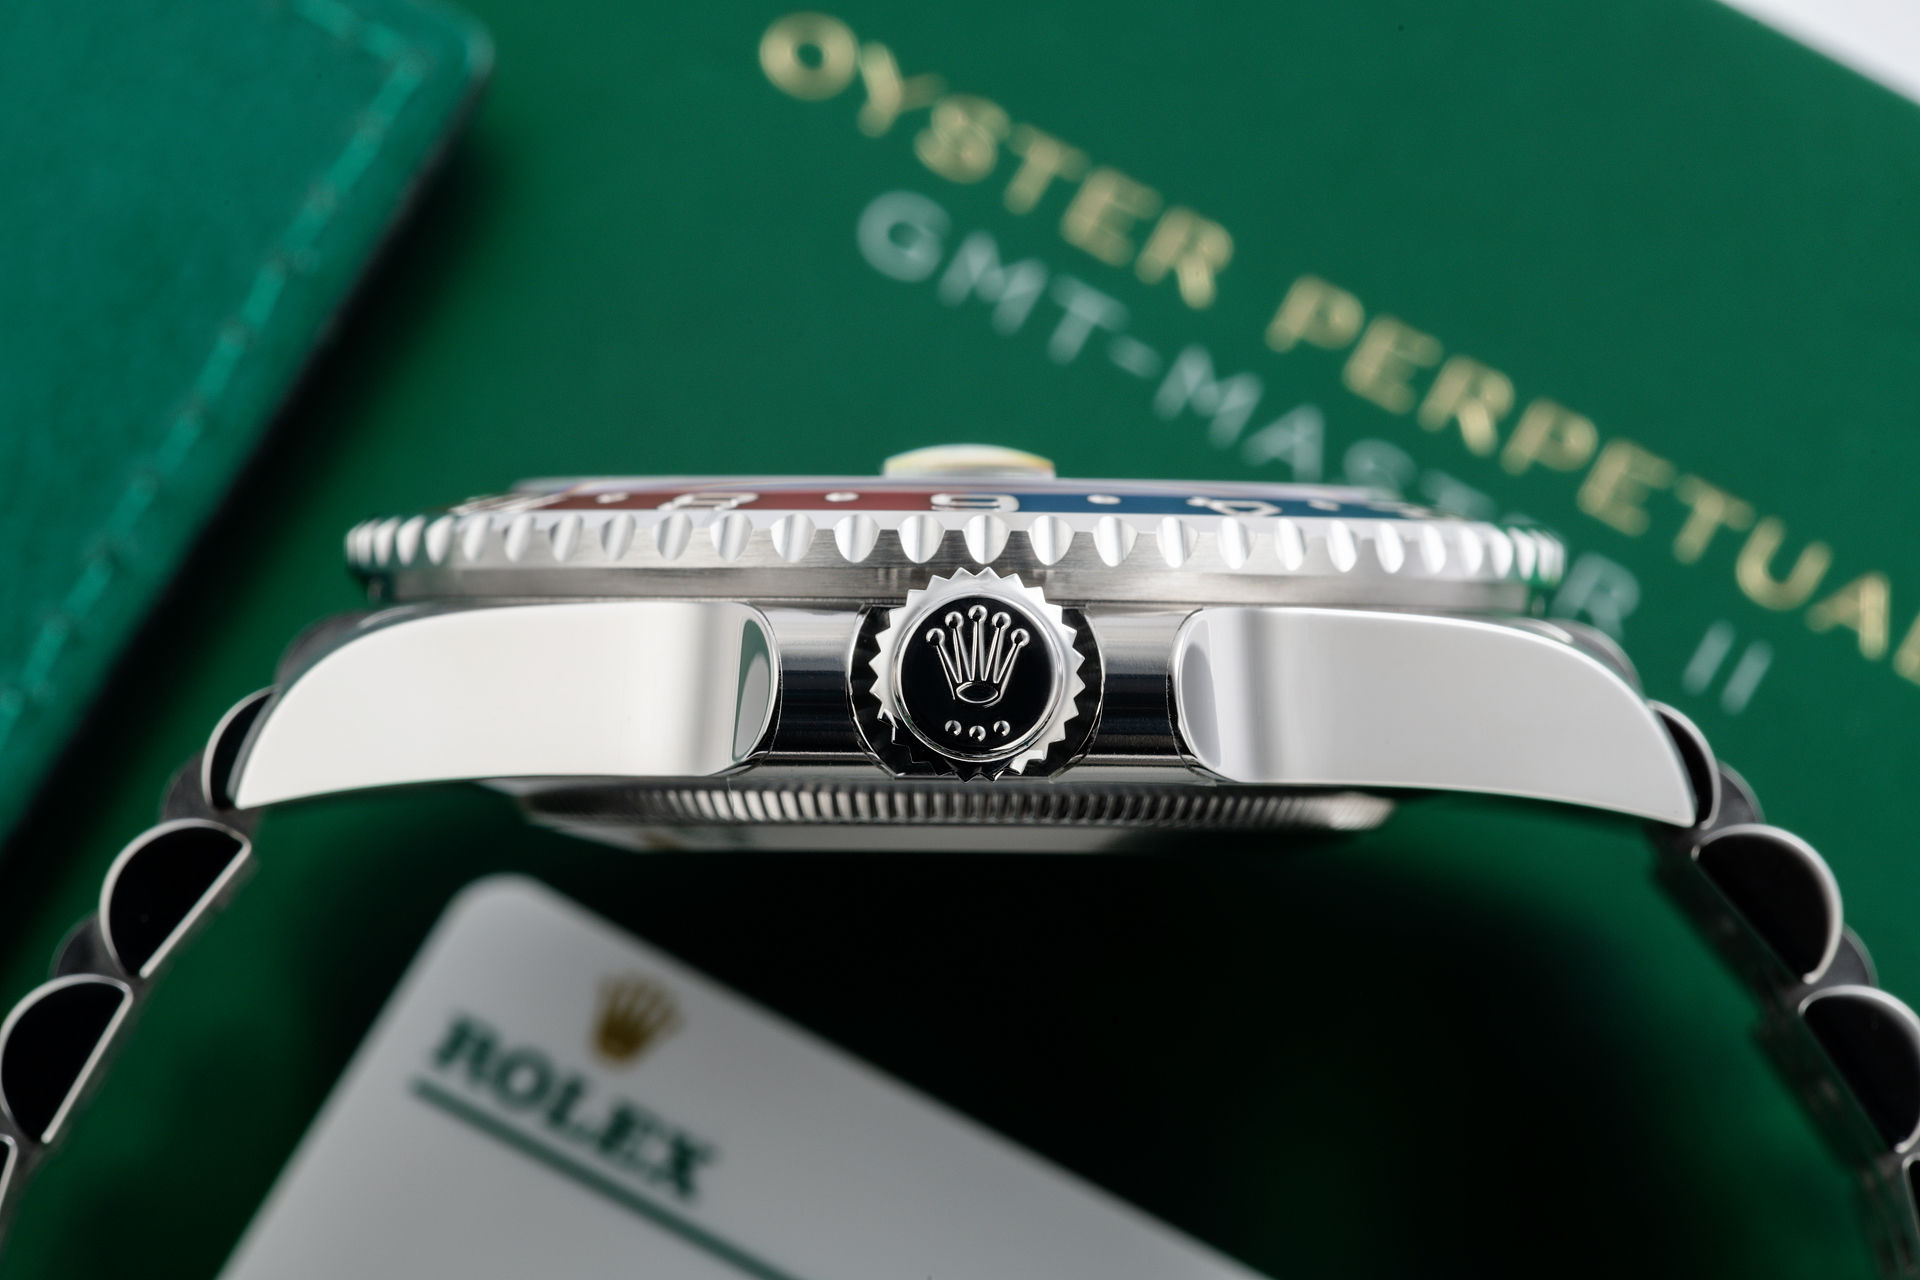 Brand New "5 Year Warranty" | ref 126710BLRO | Rolex GMT-Master II